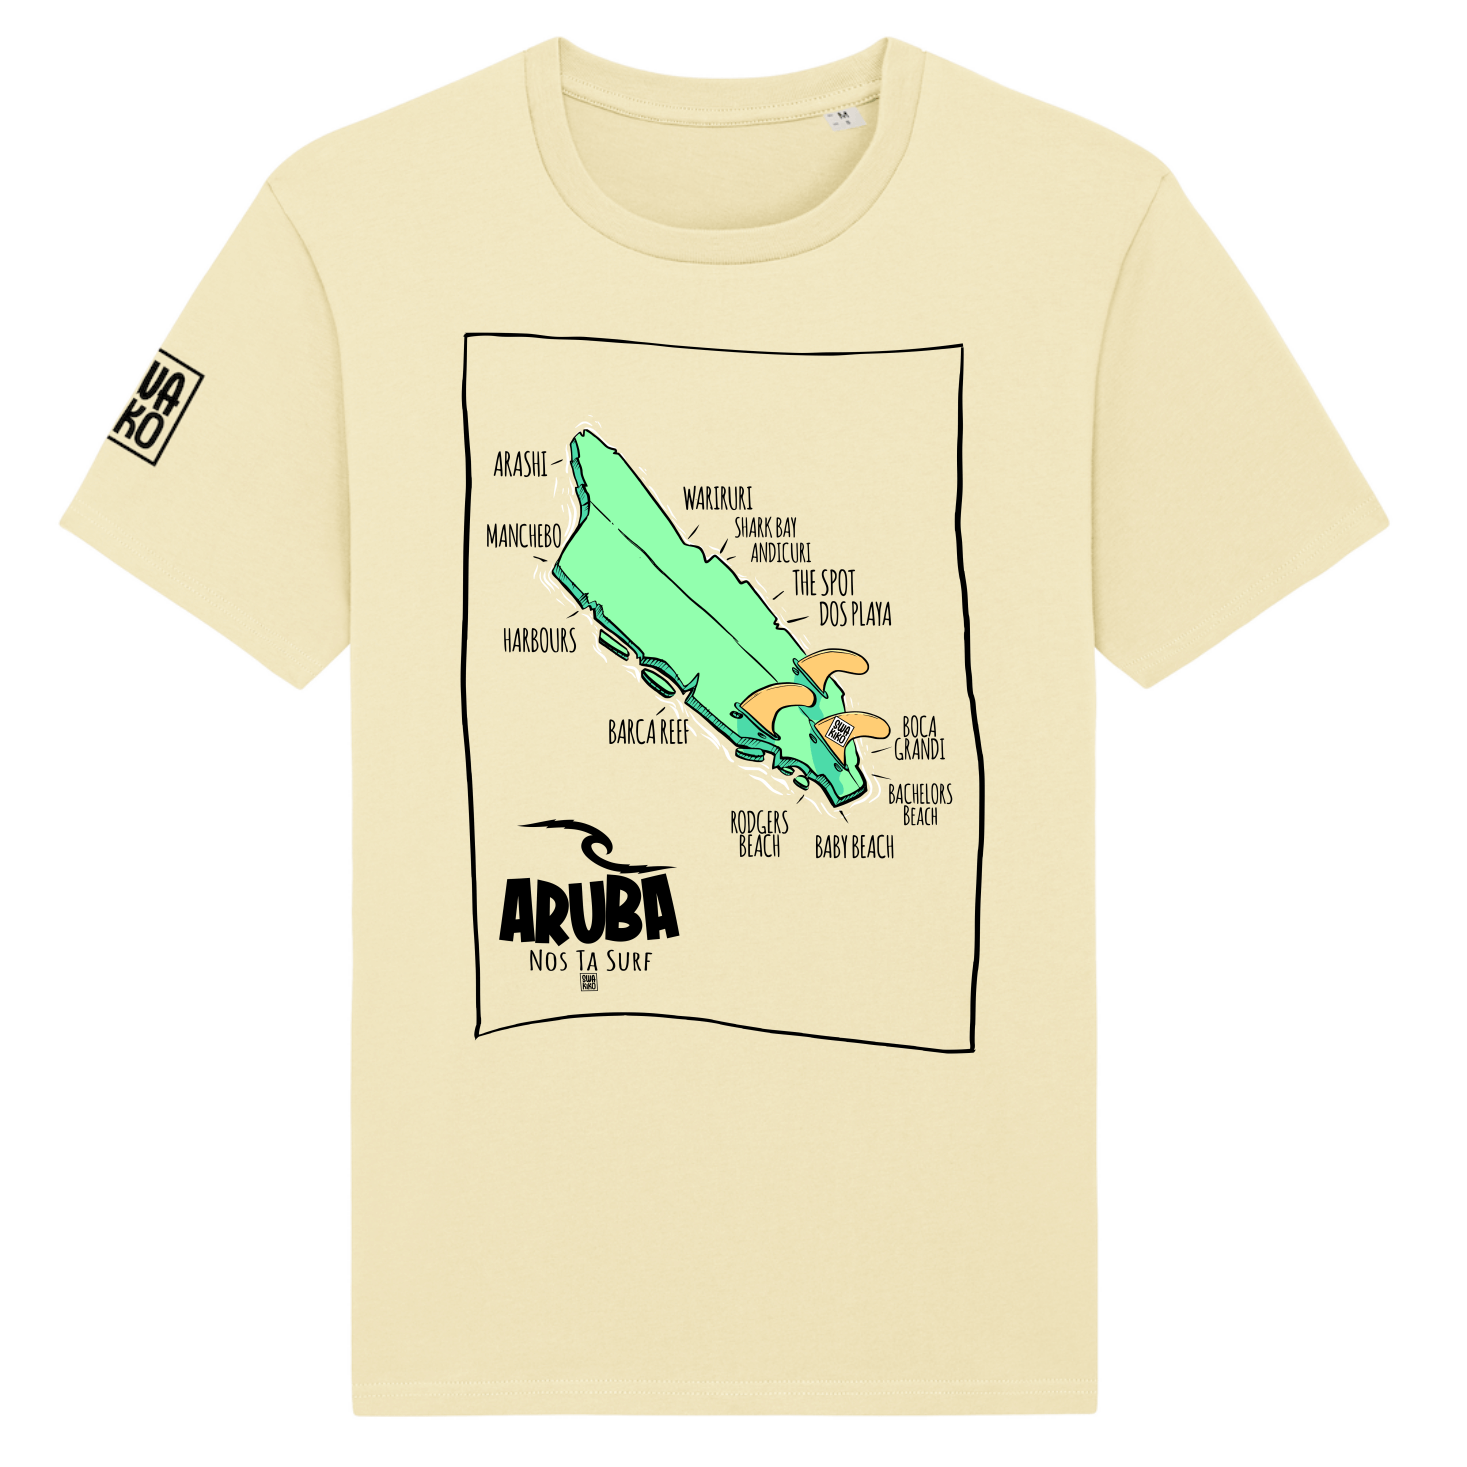 Geel T-shirt met een design van Aruba als beschadigd surfboard en de namen van stranden en surf spots. 